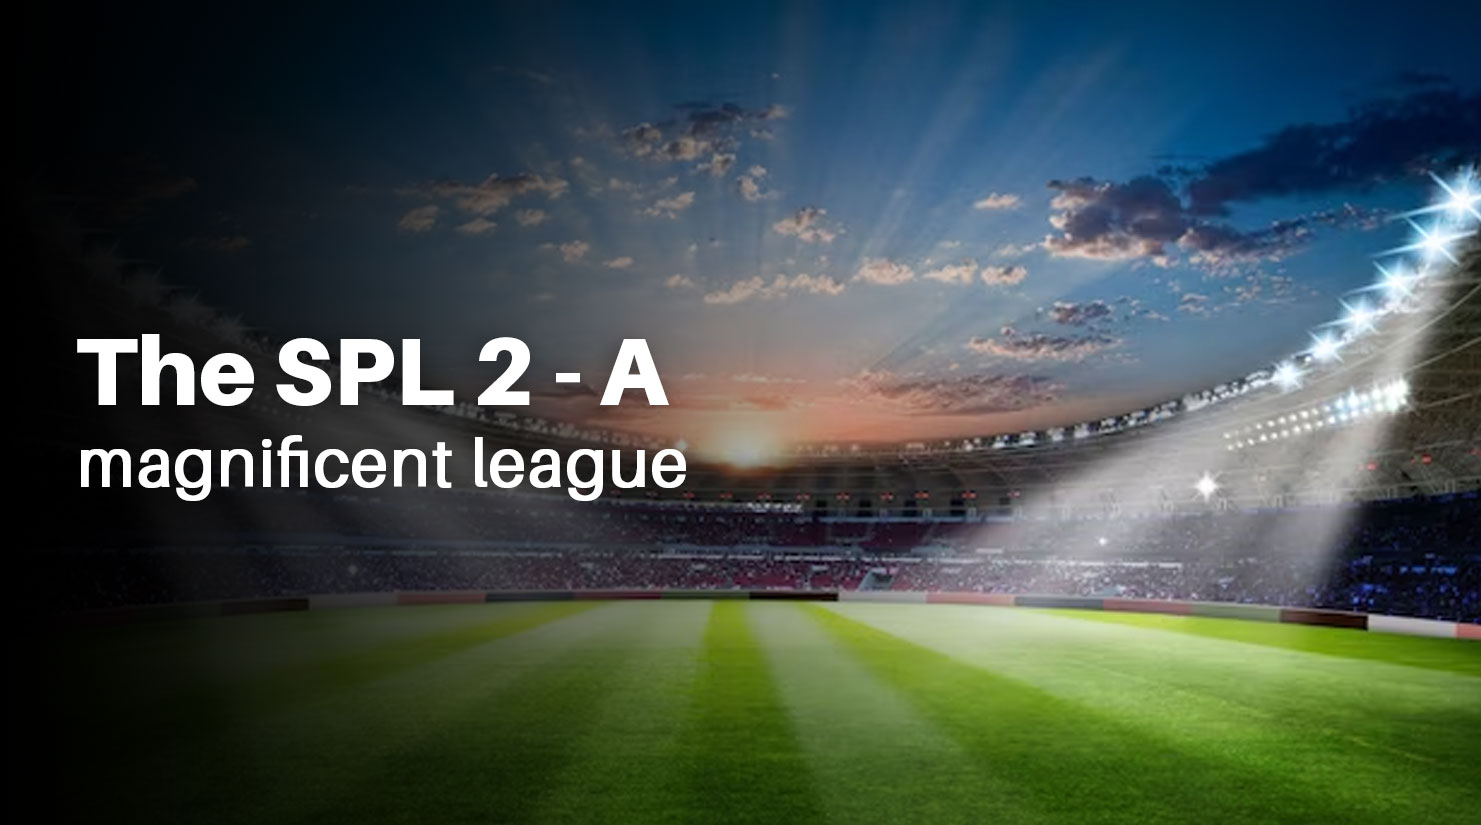 the spl 2 - a magnificent league.